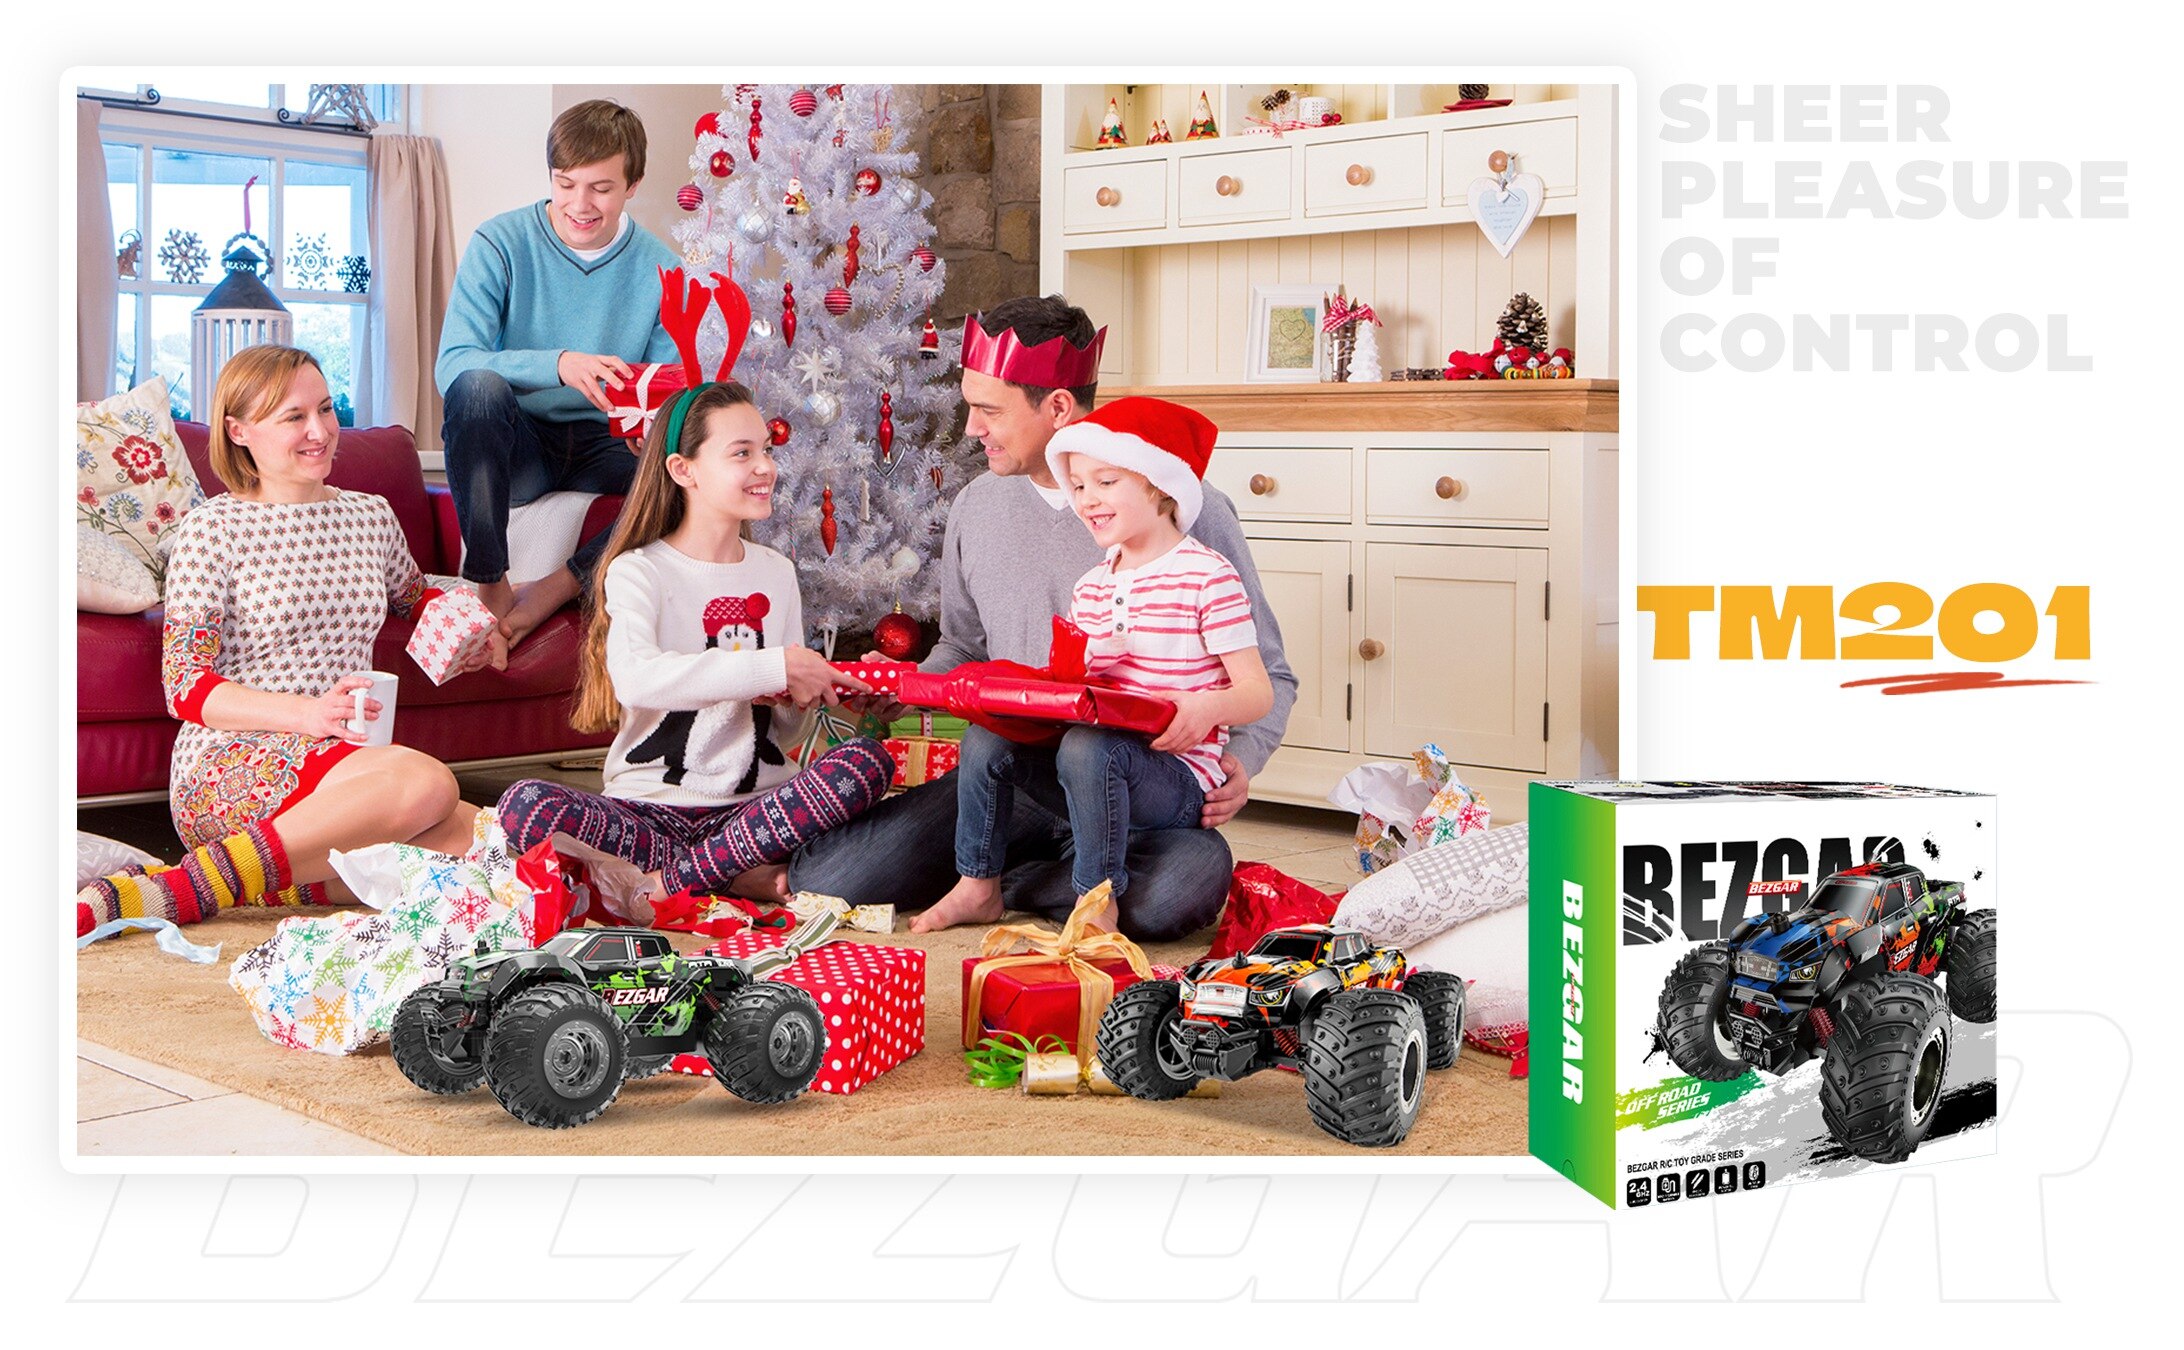 машина на радиоуправлен BEZGAR TM201 радиоуправляемая машинa, 1:20 Масштаб 2,4 ГГц вездеход 15 км / ч внедорожный грузовик-монстр,машинки игрушки игрушка для мальчиков, детские рождественские подарки